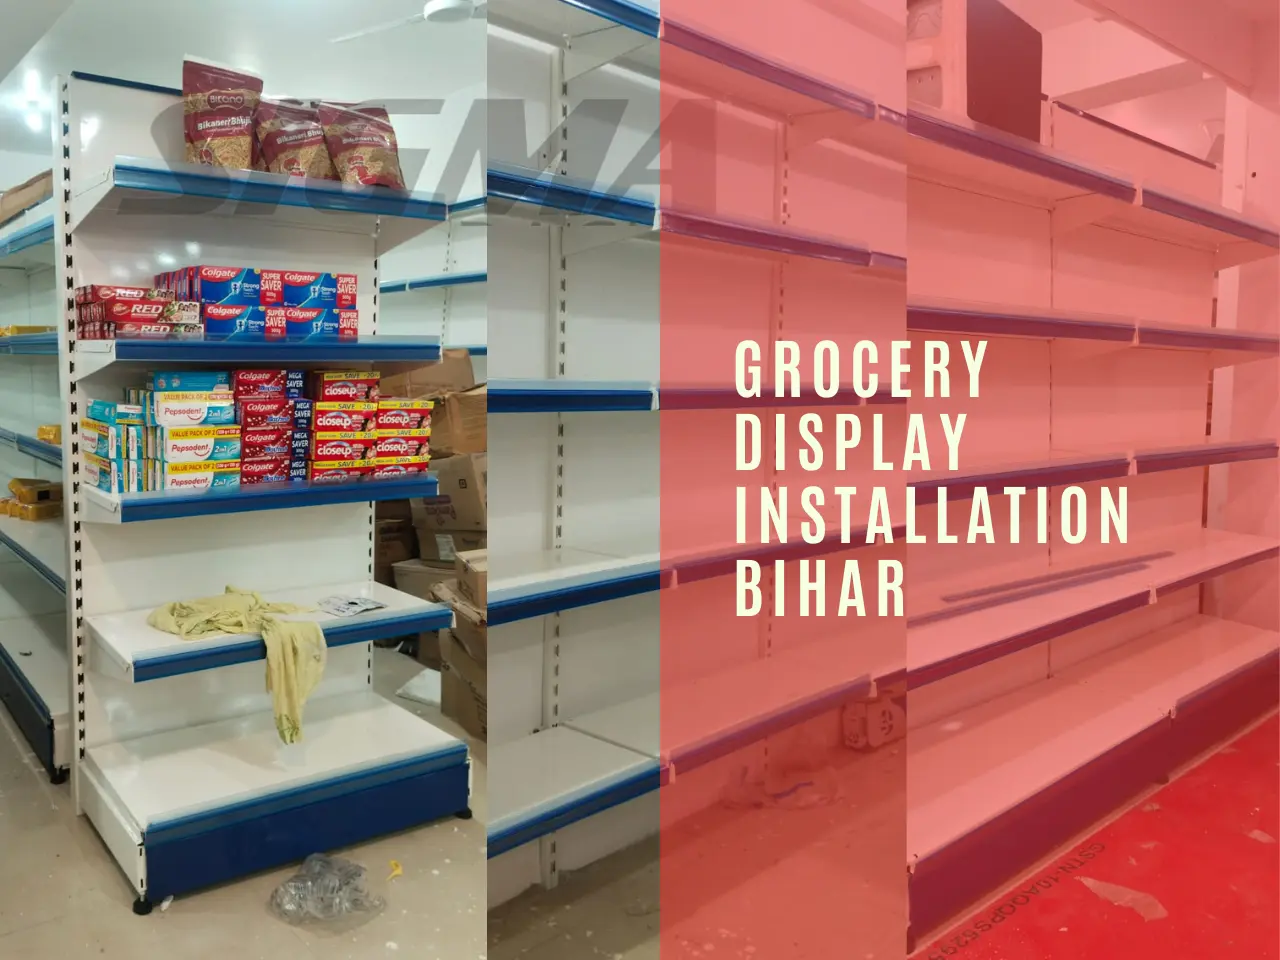 Grocery Display installation Bihar.webp